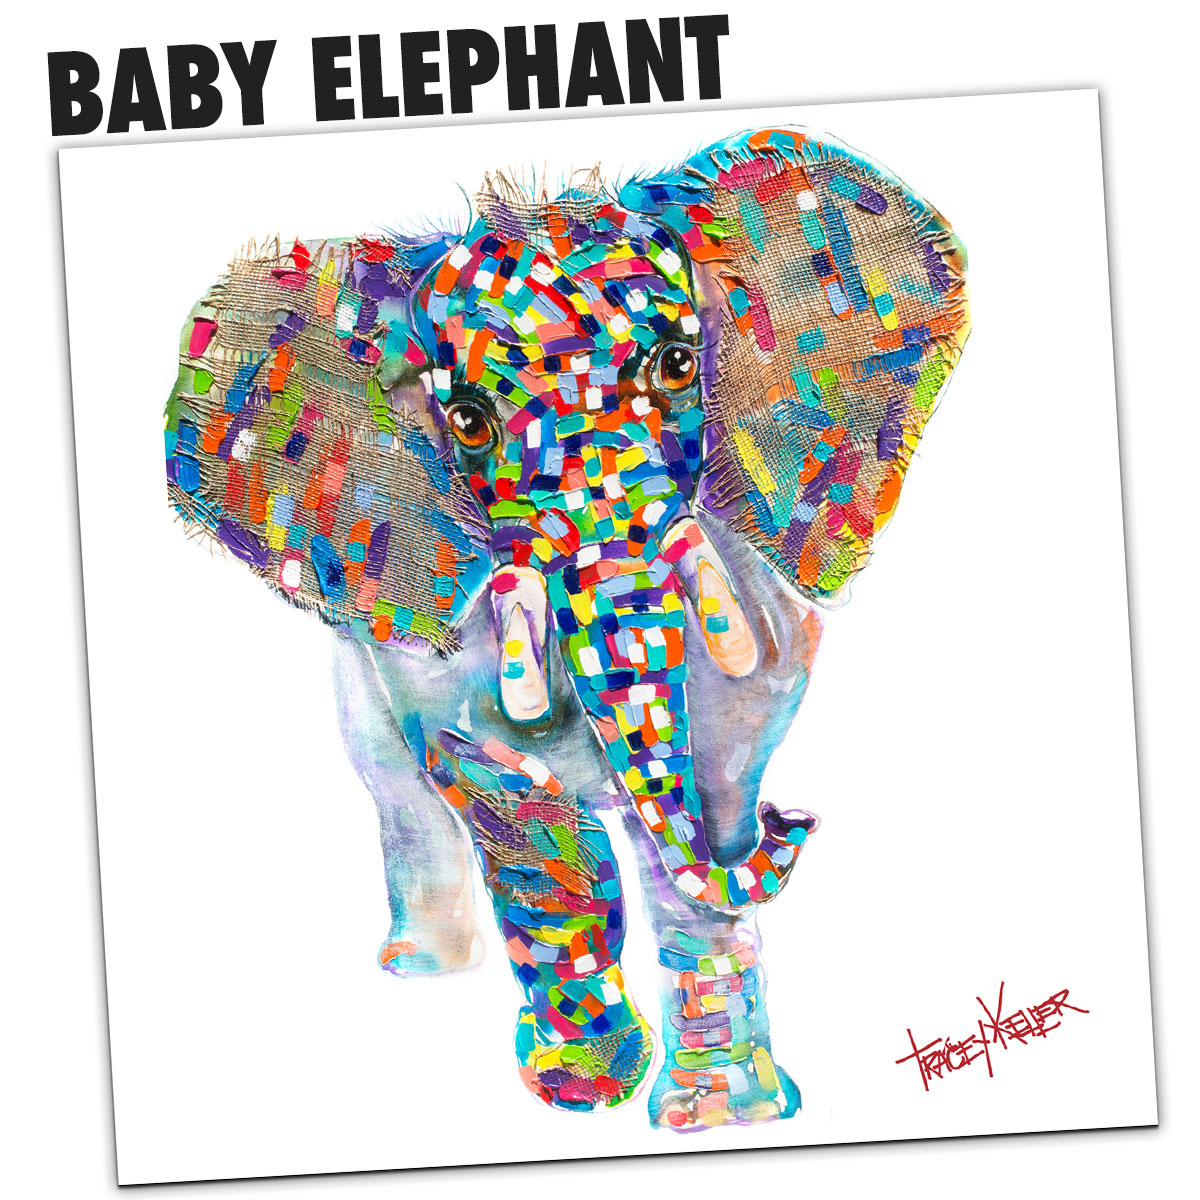 BABY ELEPHANT 2